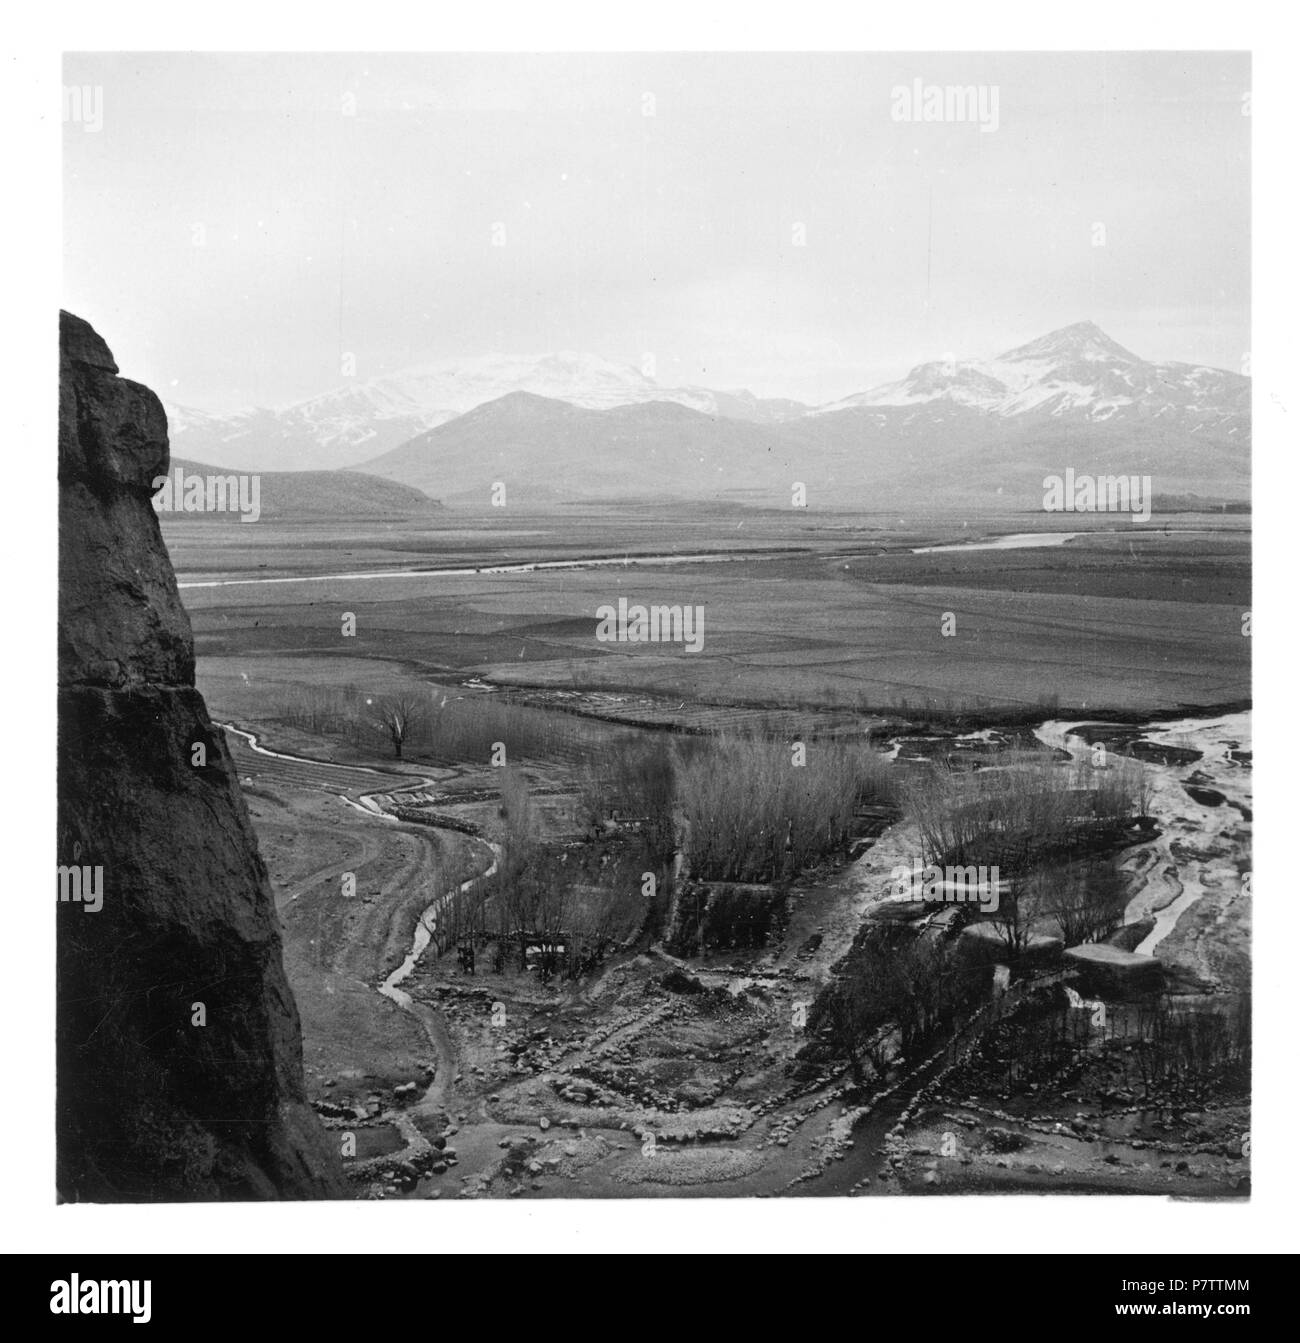 Persien, Bisutun: Landschaft; Karge Ebene mit Fluss im Hintergrund Bergketten. from 1933 until 1934 76 CH-NB - Persien, Bisutun- Landschaft - Annemarie Schwarzenbach - SLA-Schwarzenbach-A-5-04-030 Stock Photo